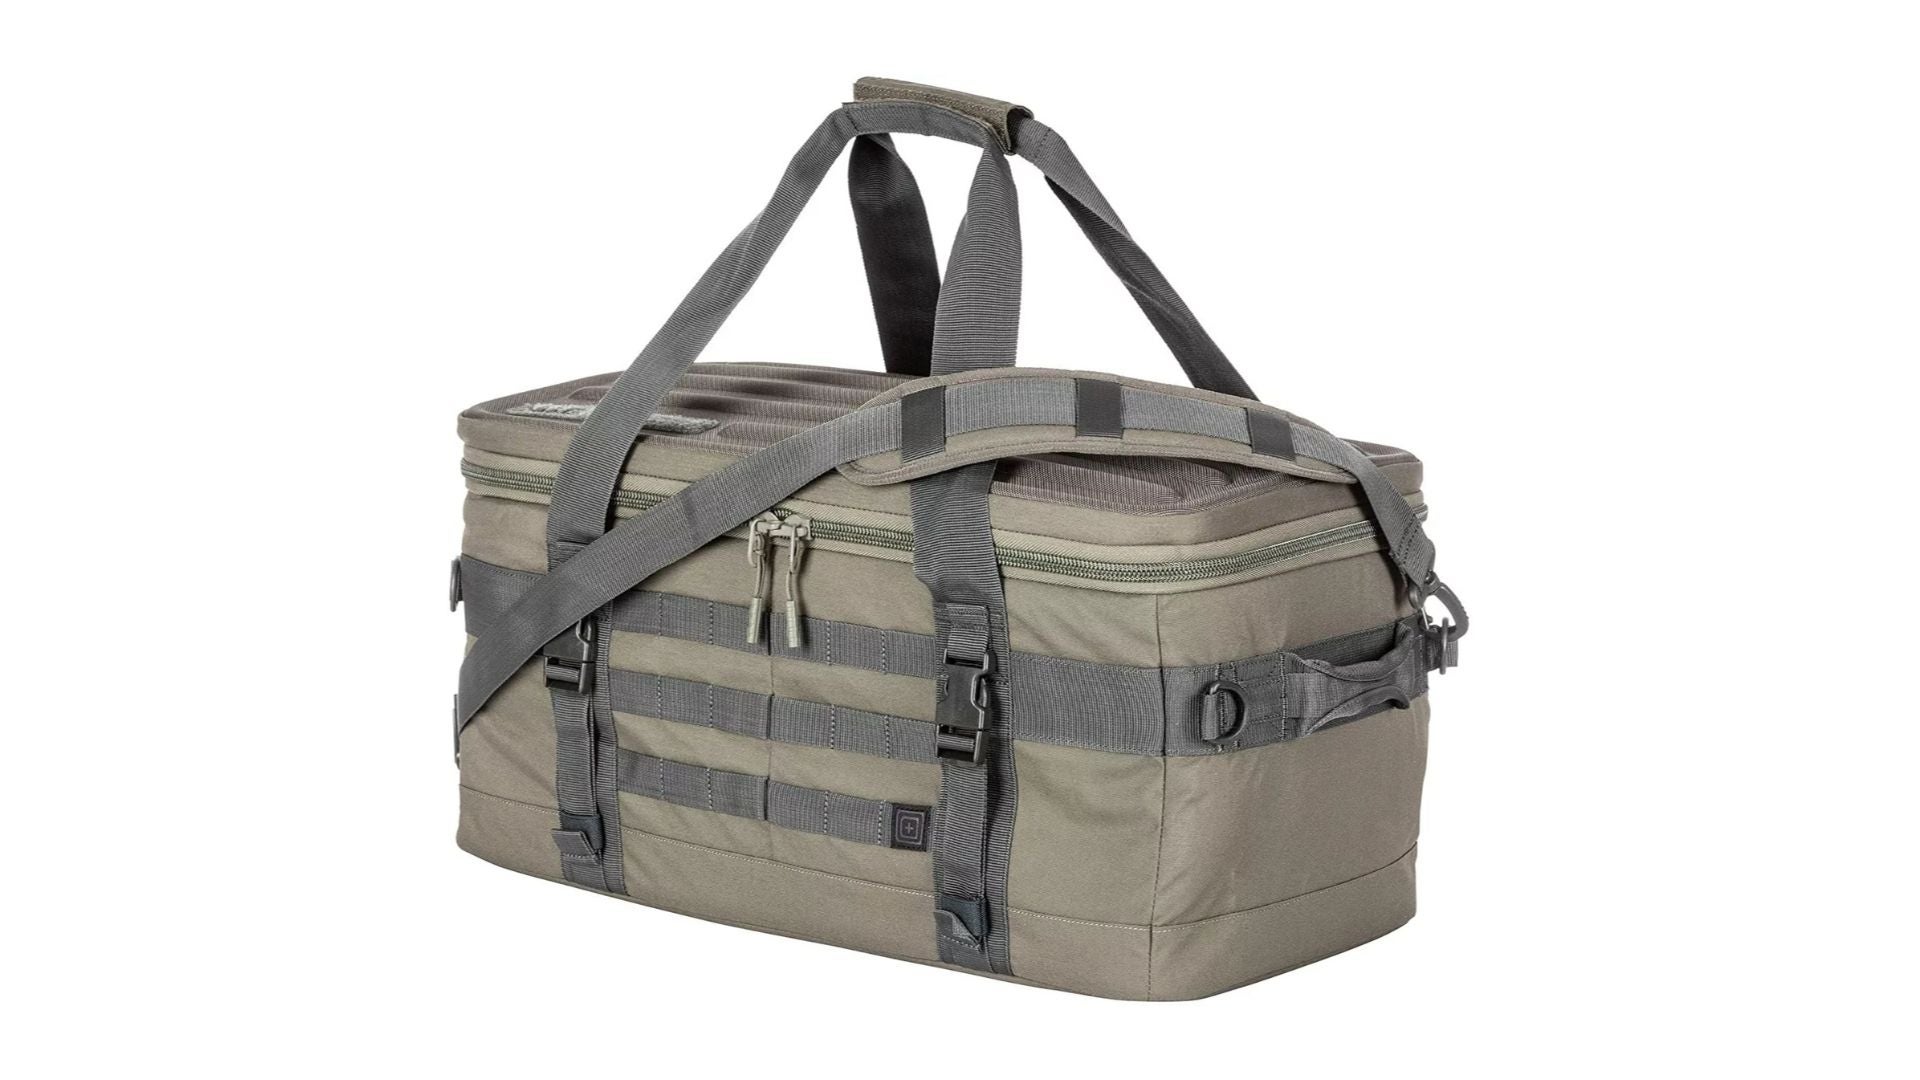 Duffle Bag Gray Large Size Heavy Duty Tactical Gun Range Bag FREE SHIPPING! 